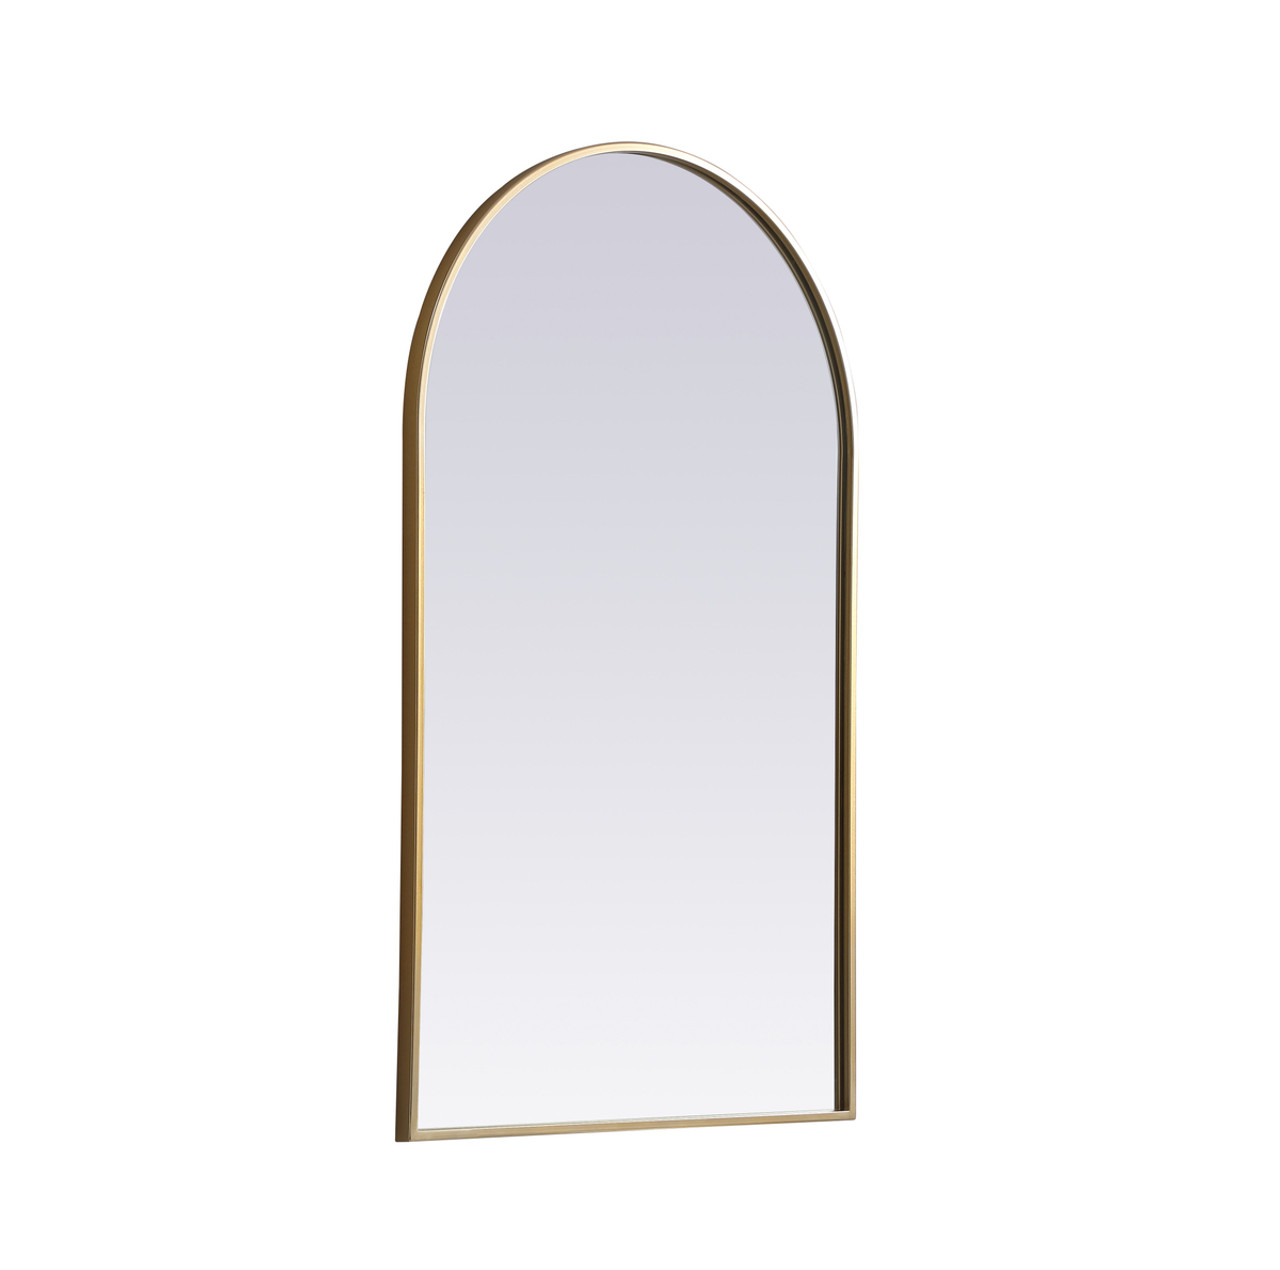 Elegant Decor MR1A2440BRS Metal Frame Arch Mirror 24x40 Inch in Brass